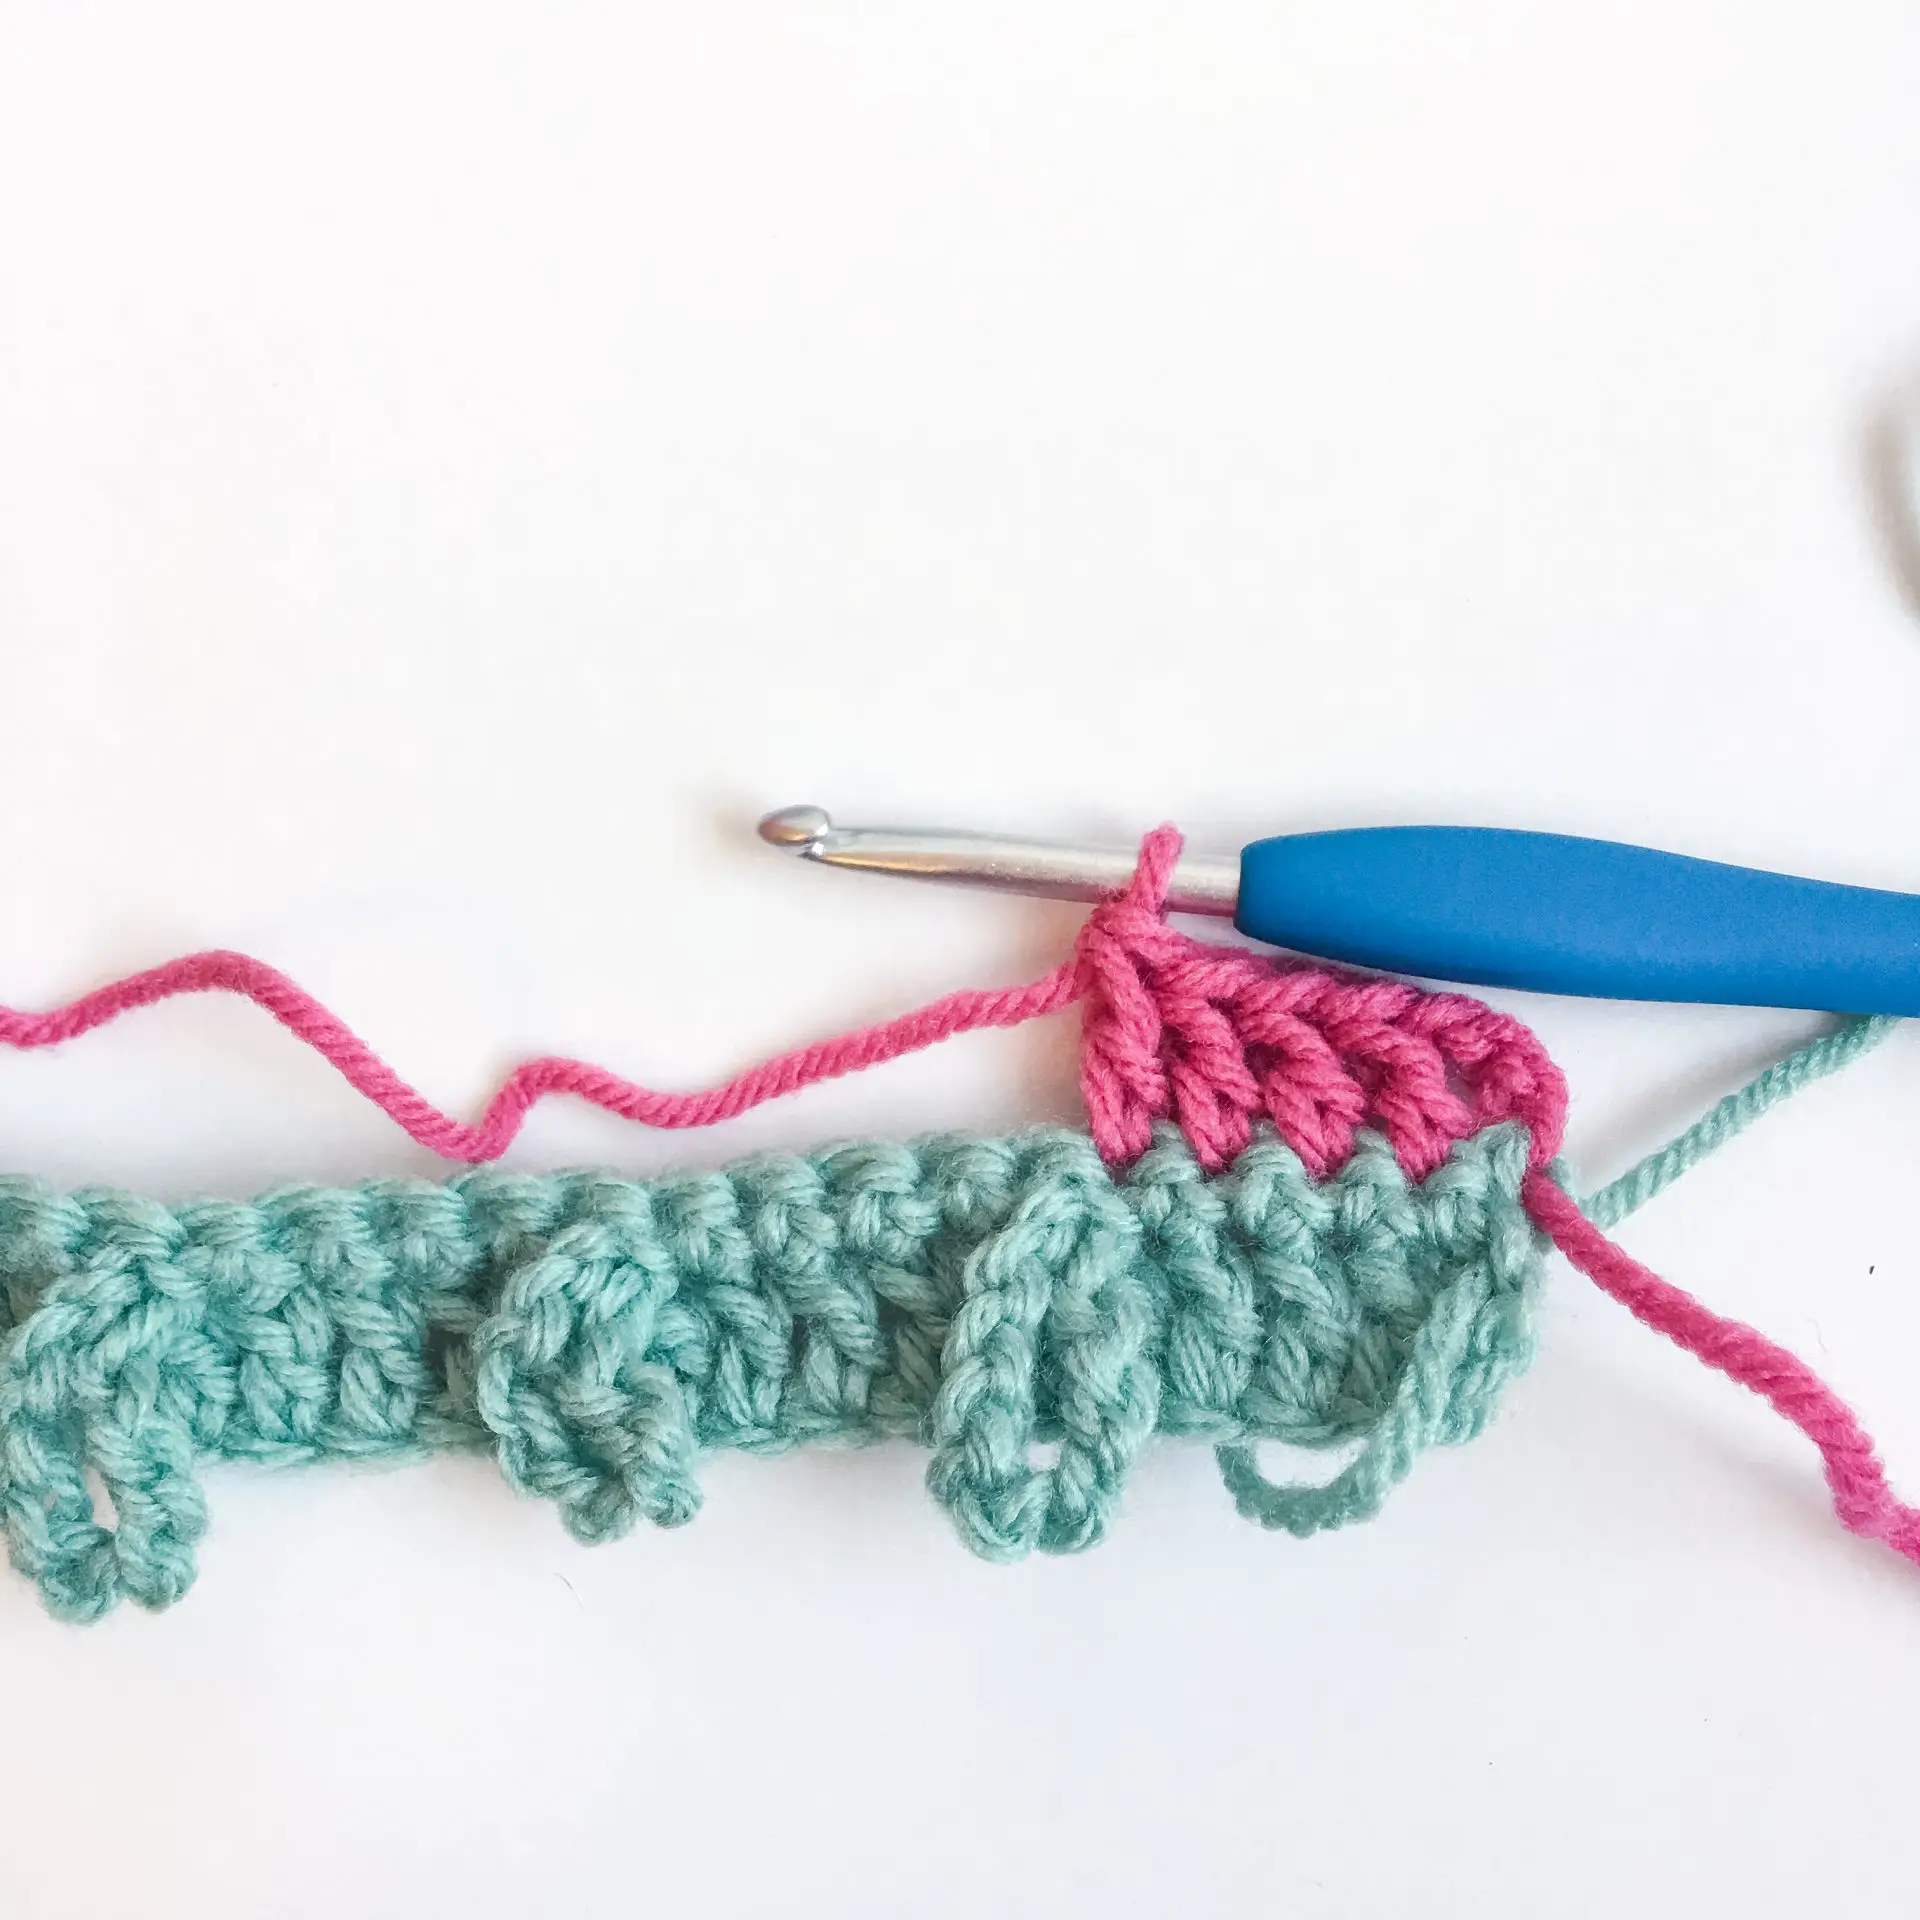 Braided Loops Crochet Stitch Row 3 beginning